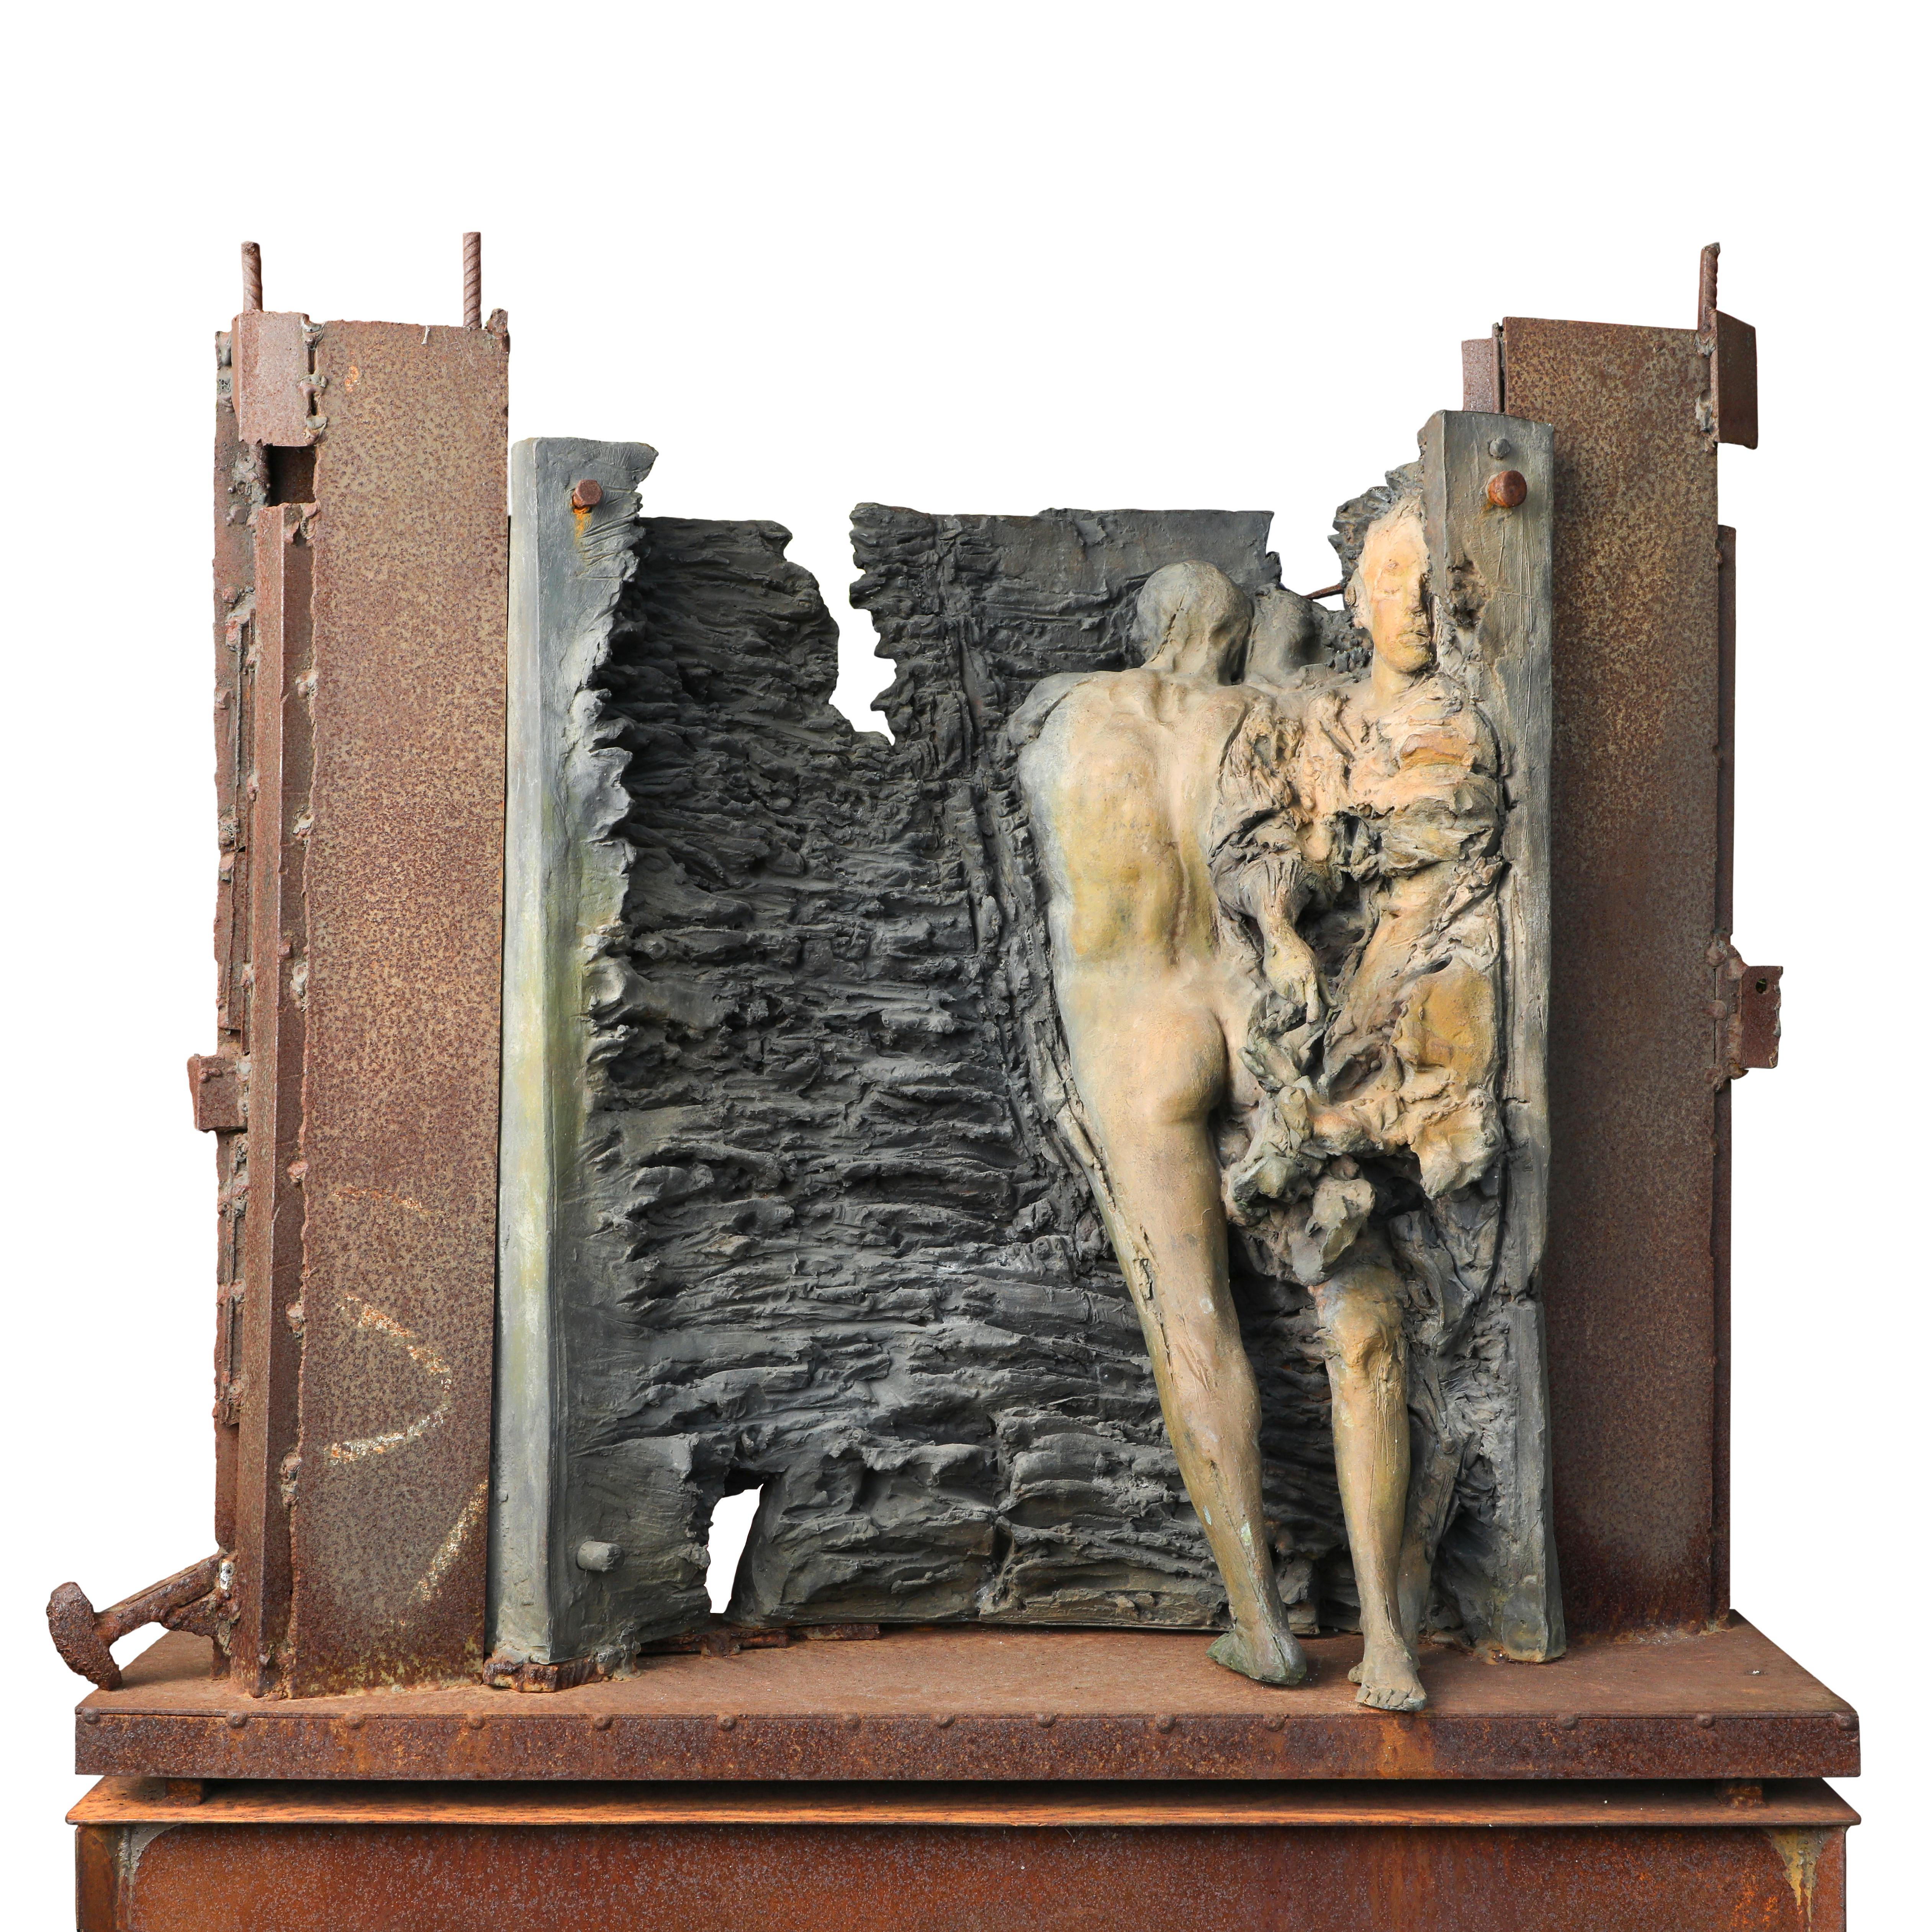 Hugo Rivas Figurative Sculpture – Sull'abisso dell'eternita, 2011